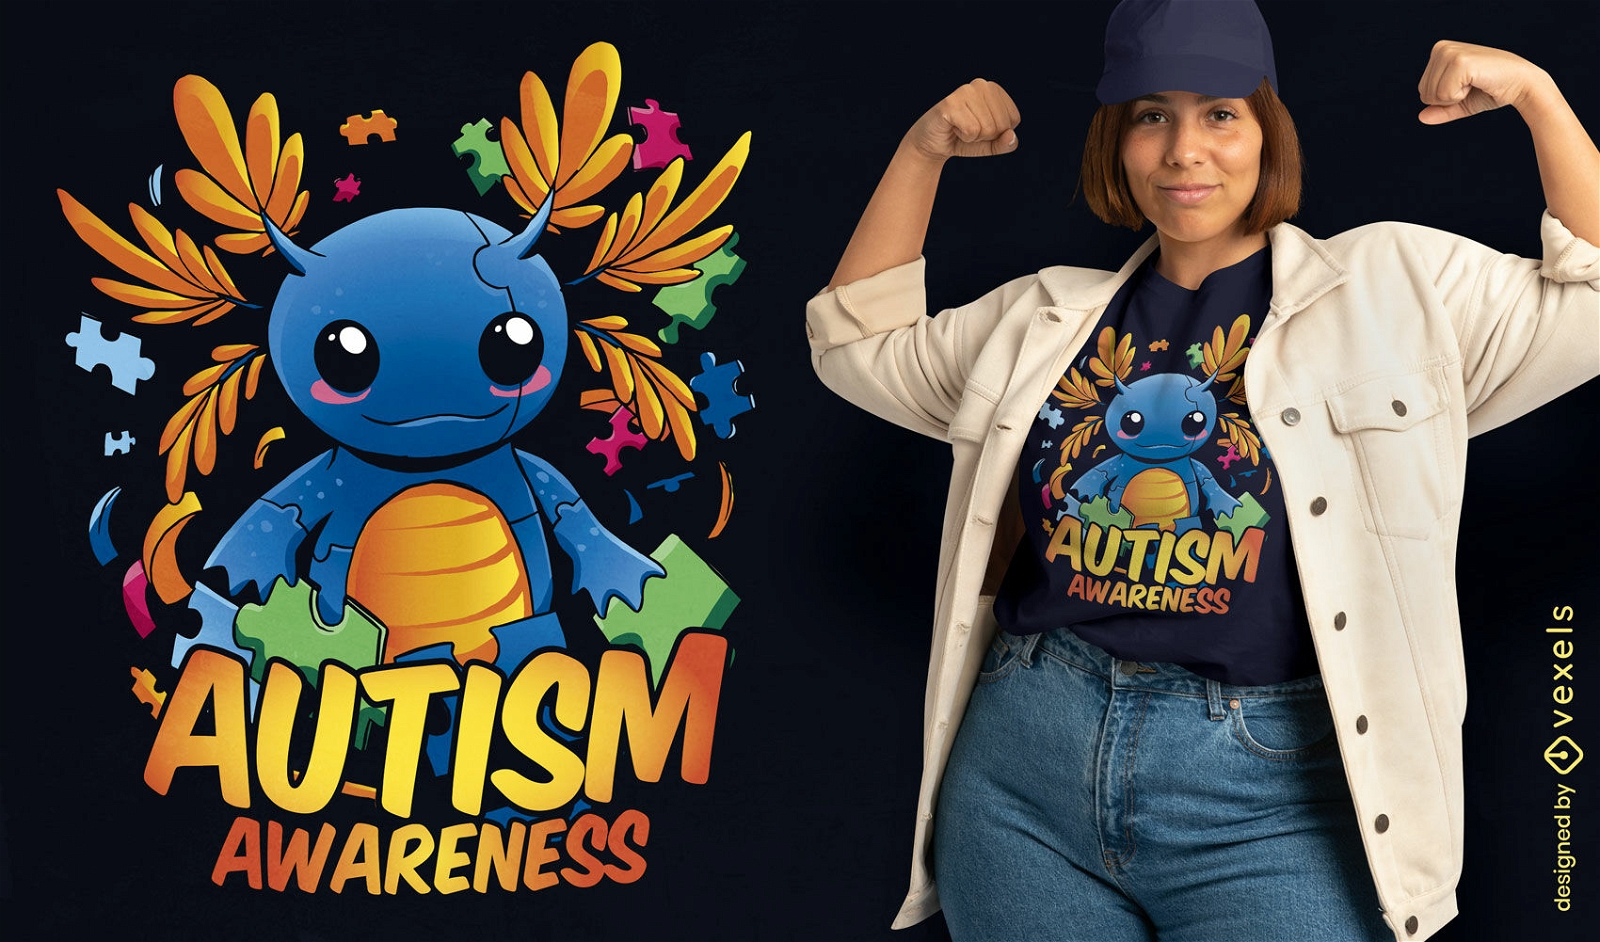 Axolotl autism awareness t-shirt design